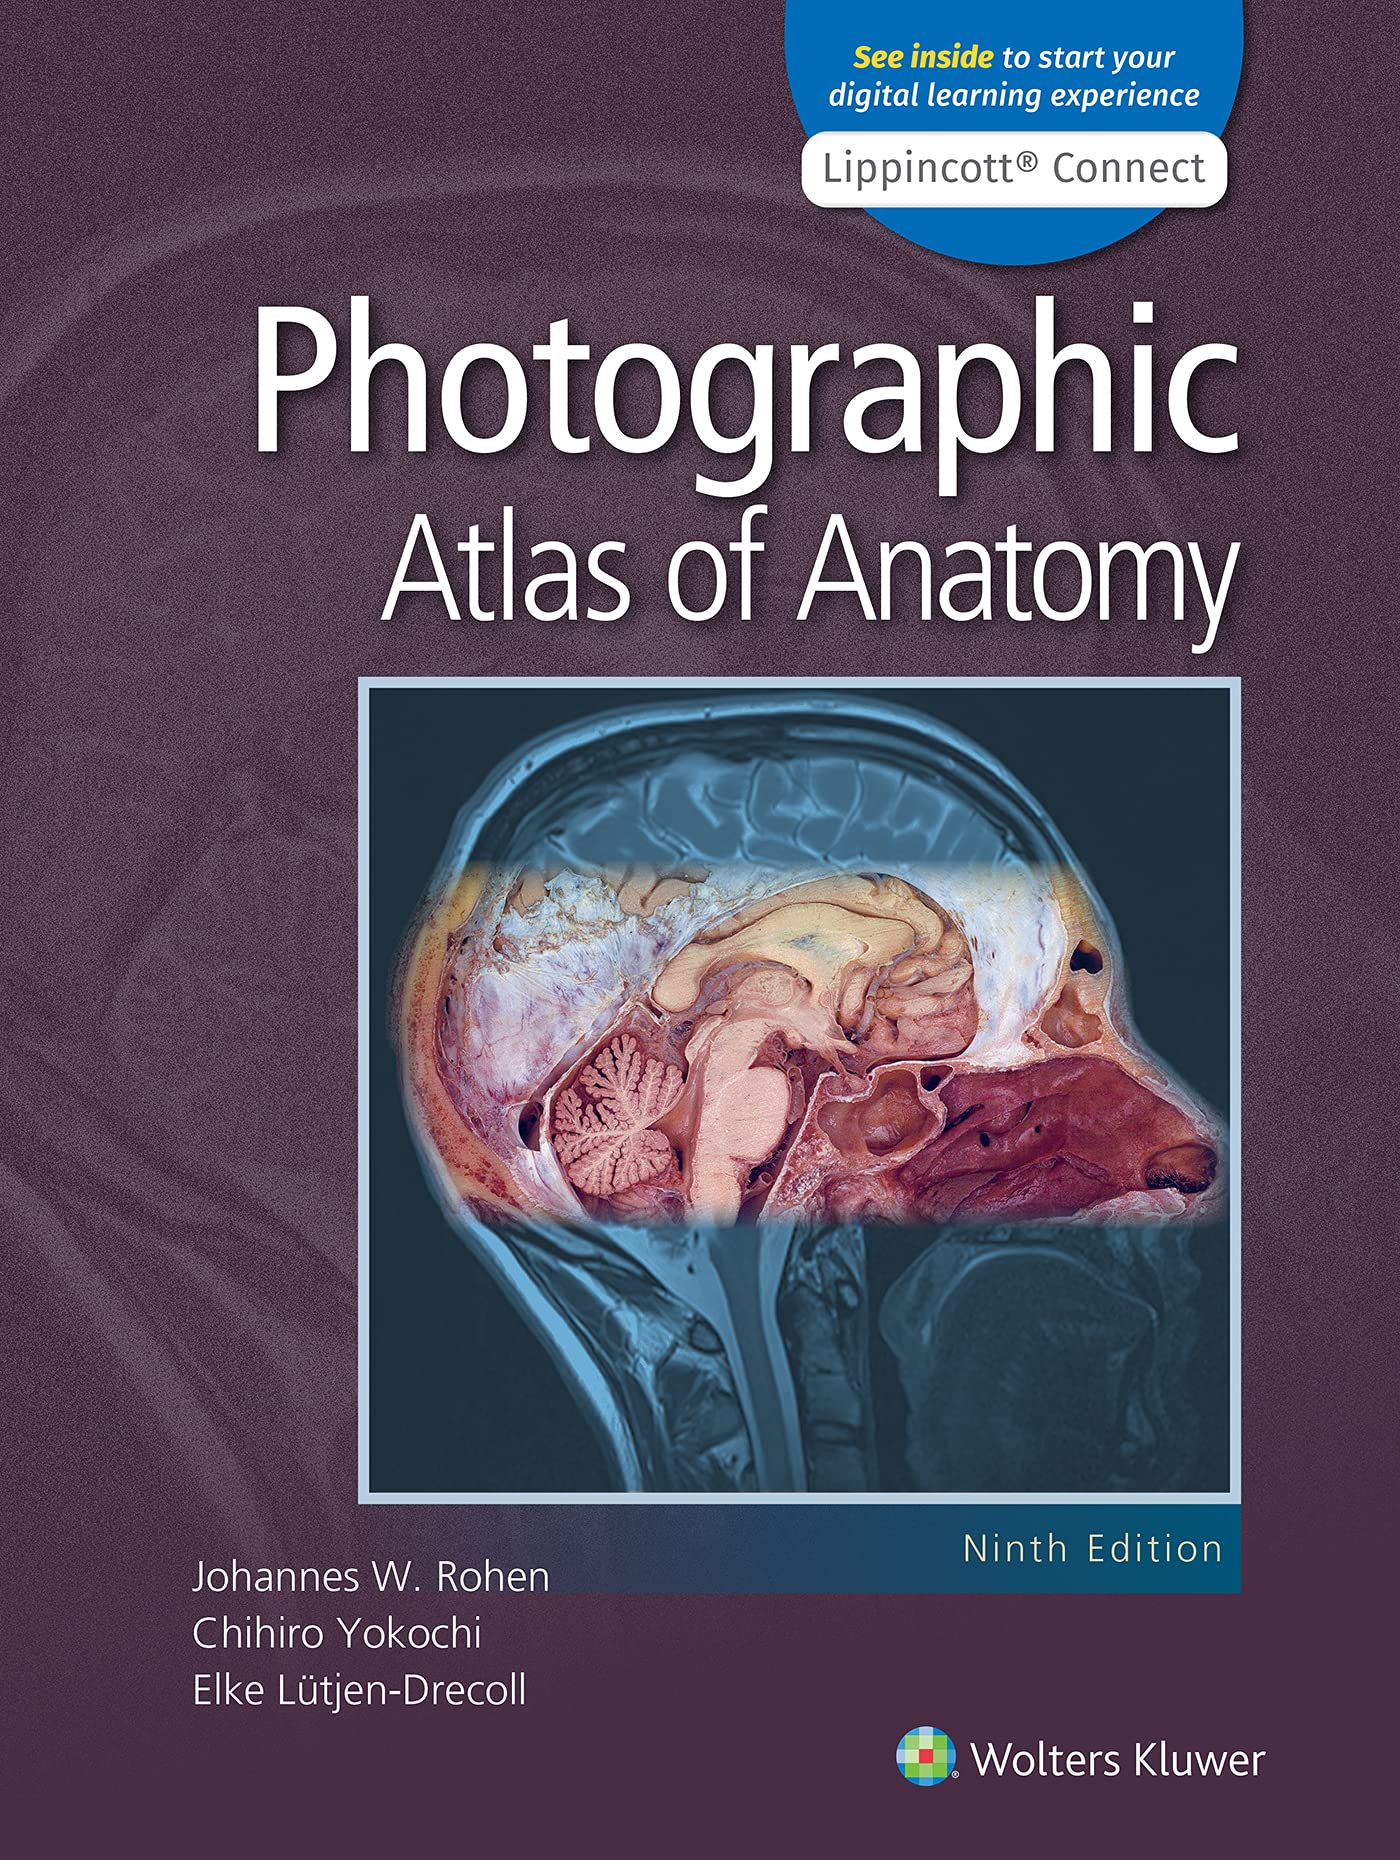 Anatomy: A Photographic Atlas (by Johannes W. Rohen, Chihiro Yokochi, and Elke Lütjen-Drecoll)